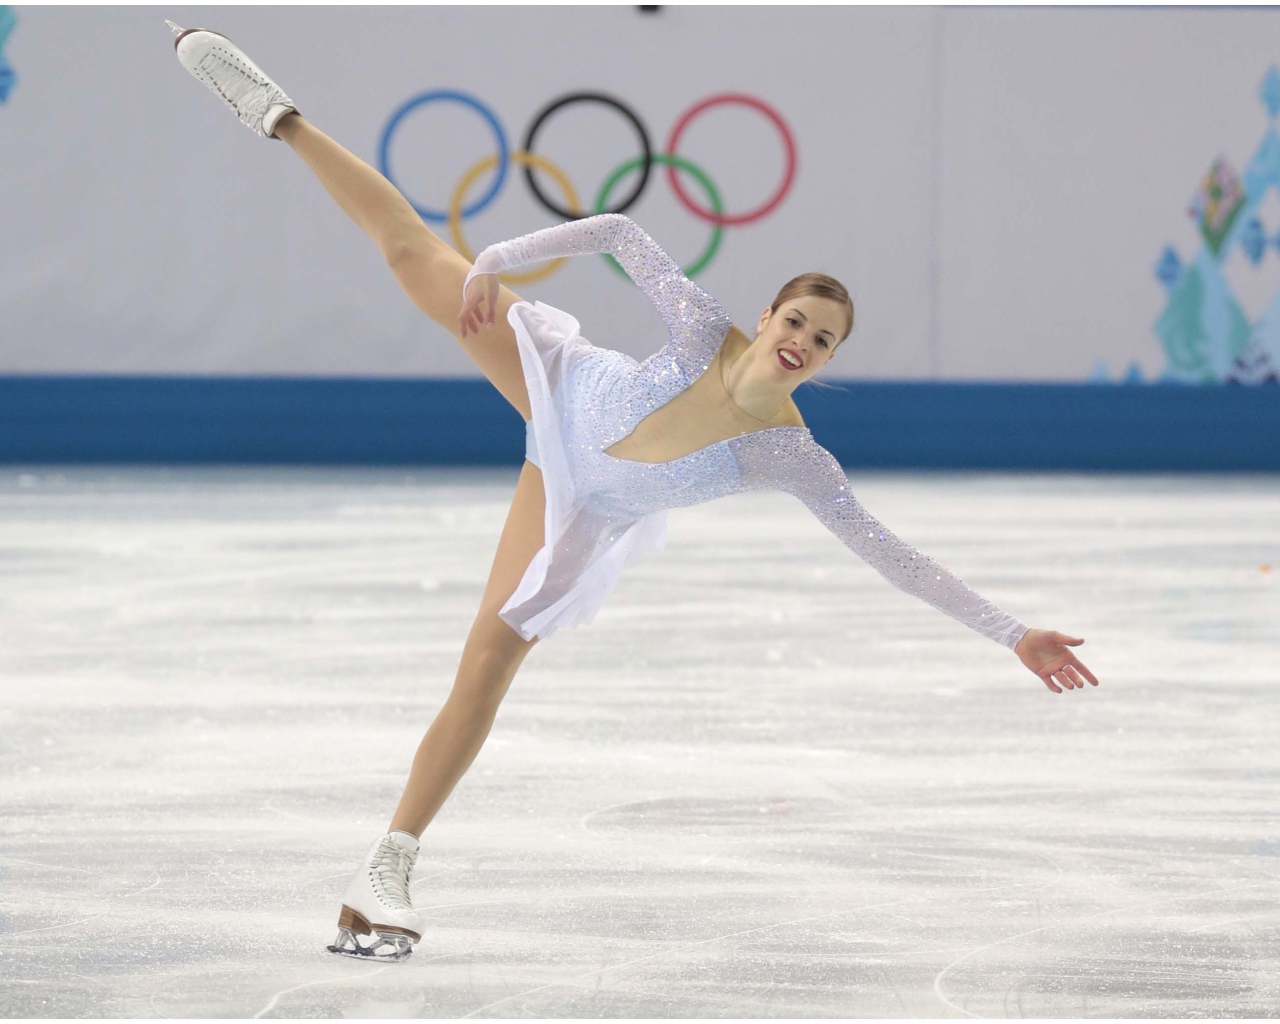 Italian skater Carolina Kostner at the Olympic Games in Sochi